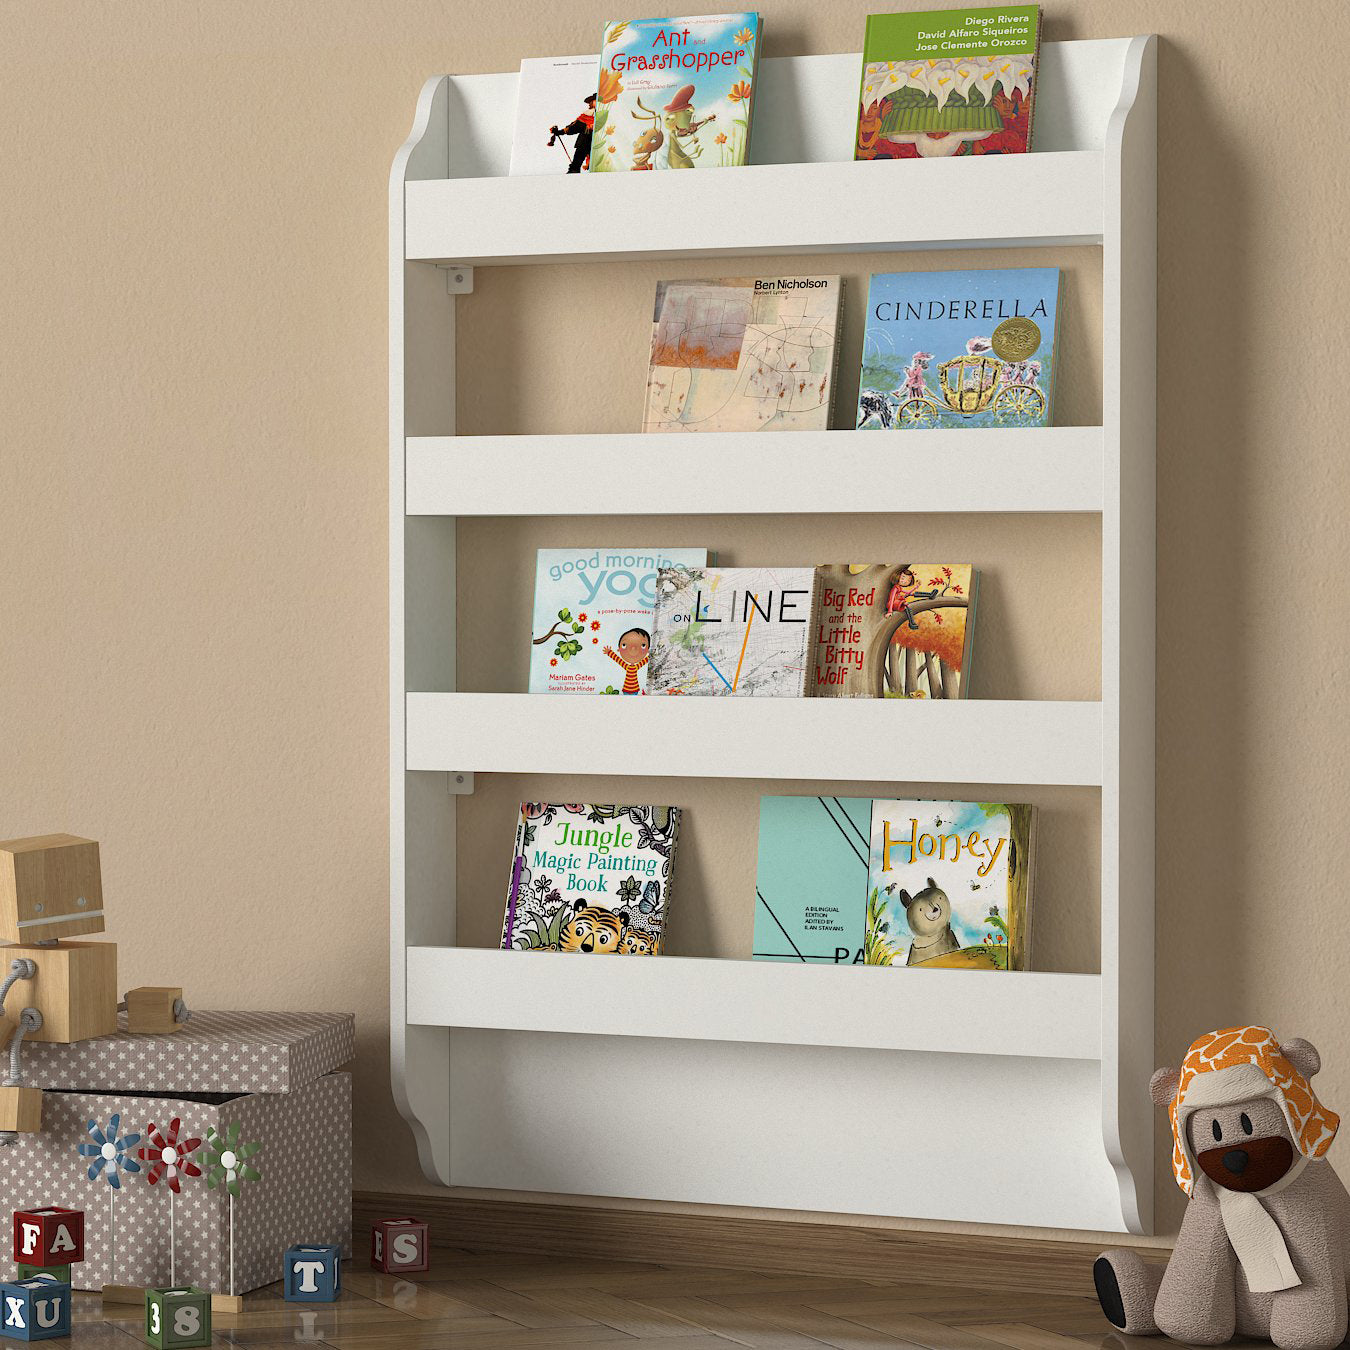 Bibliothèque murale Montessori blanche en bois avec livres et jouets pour enfants